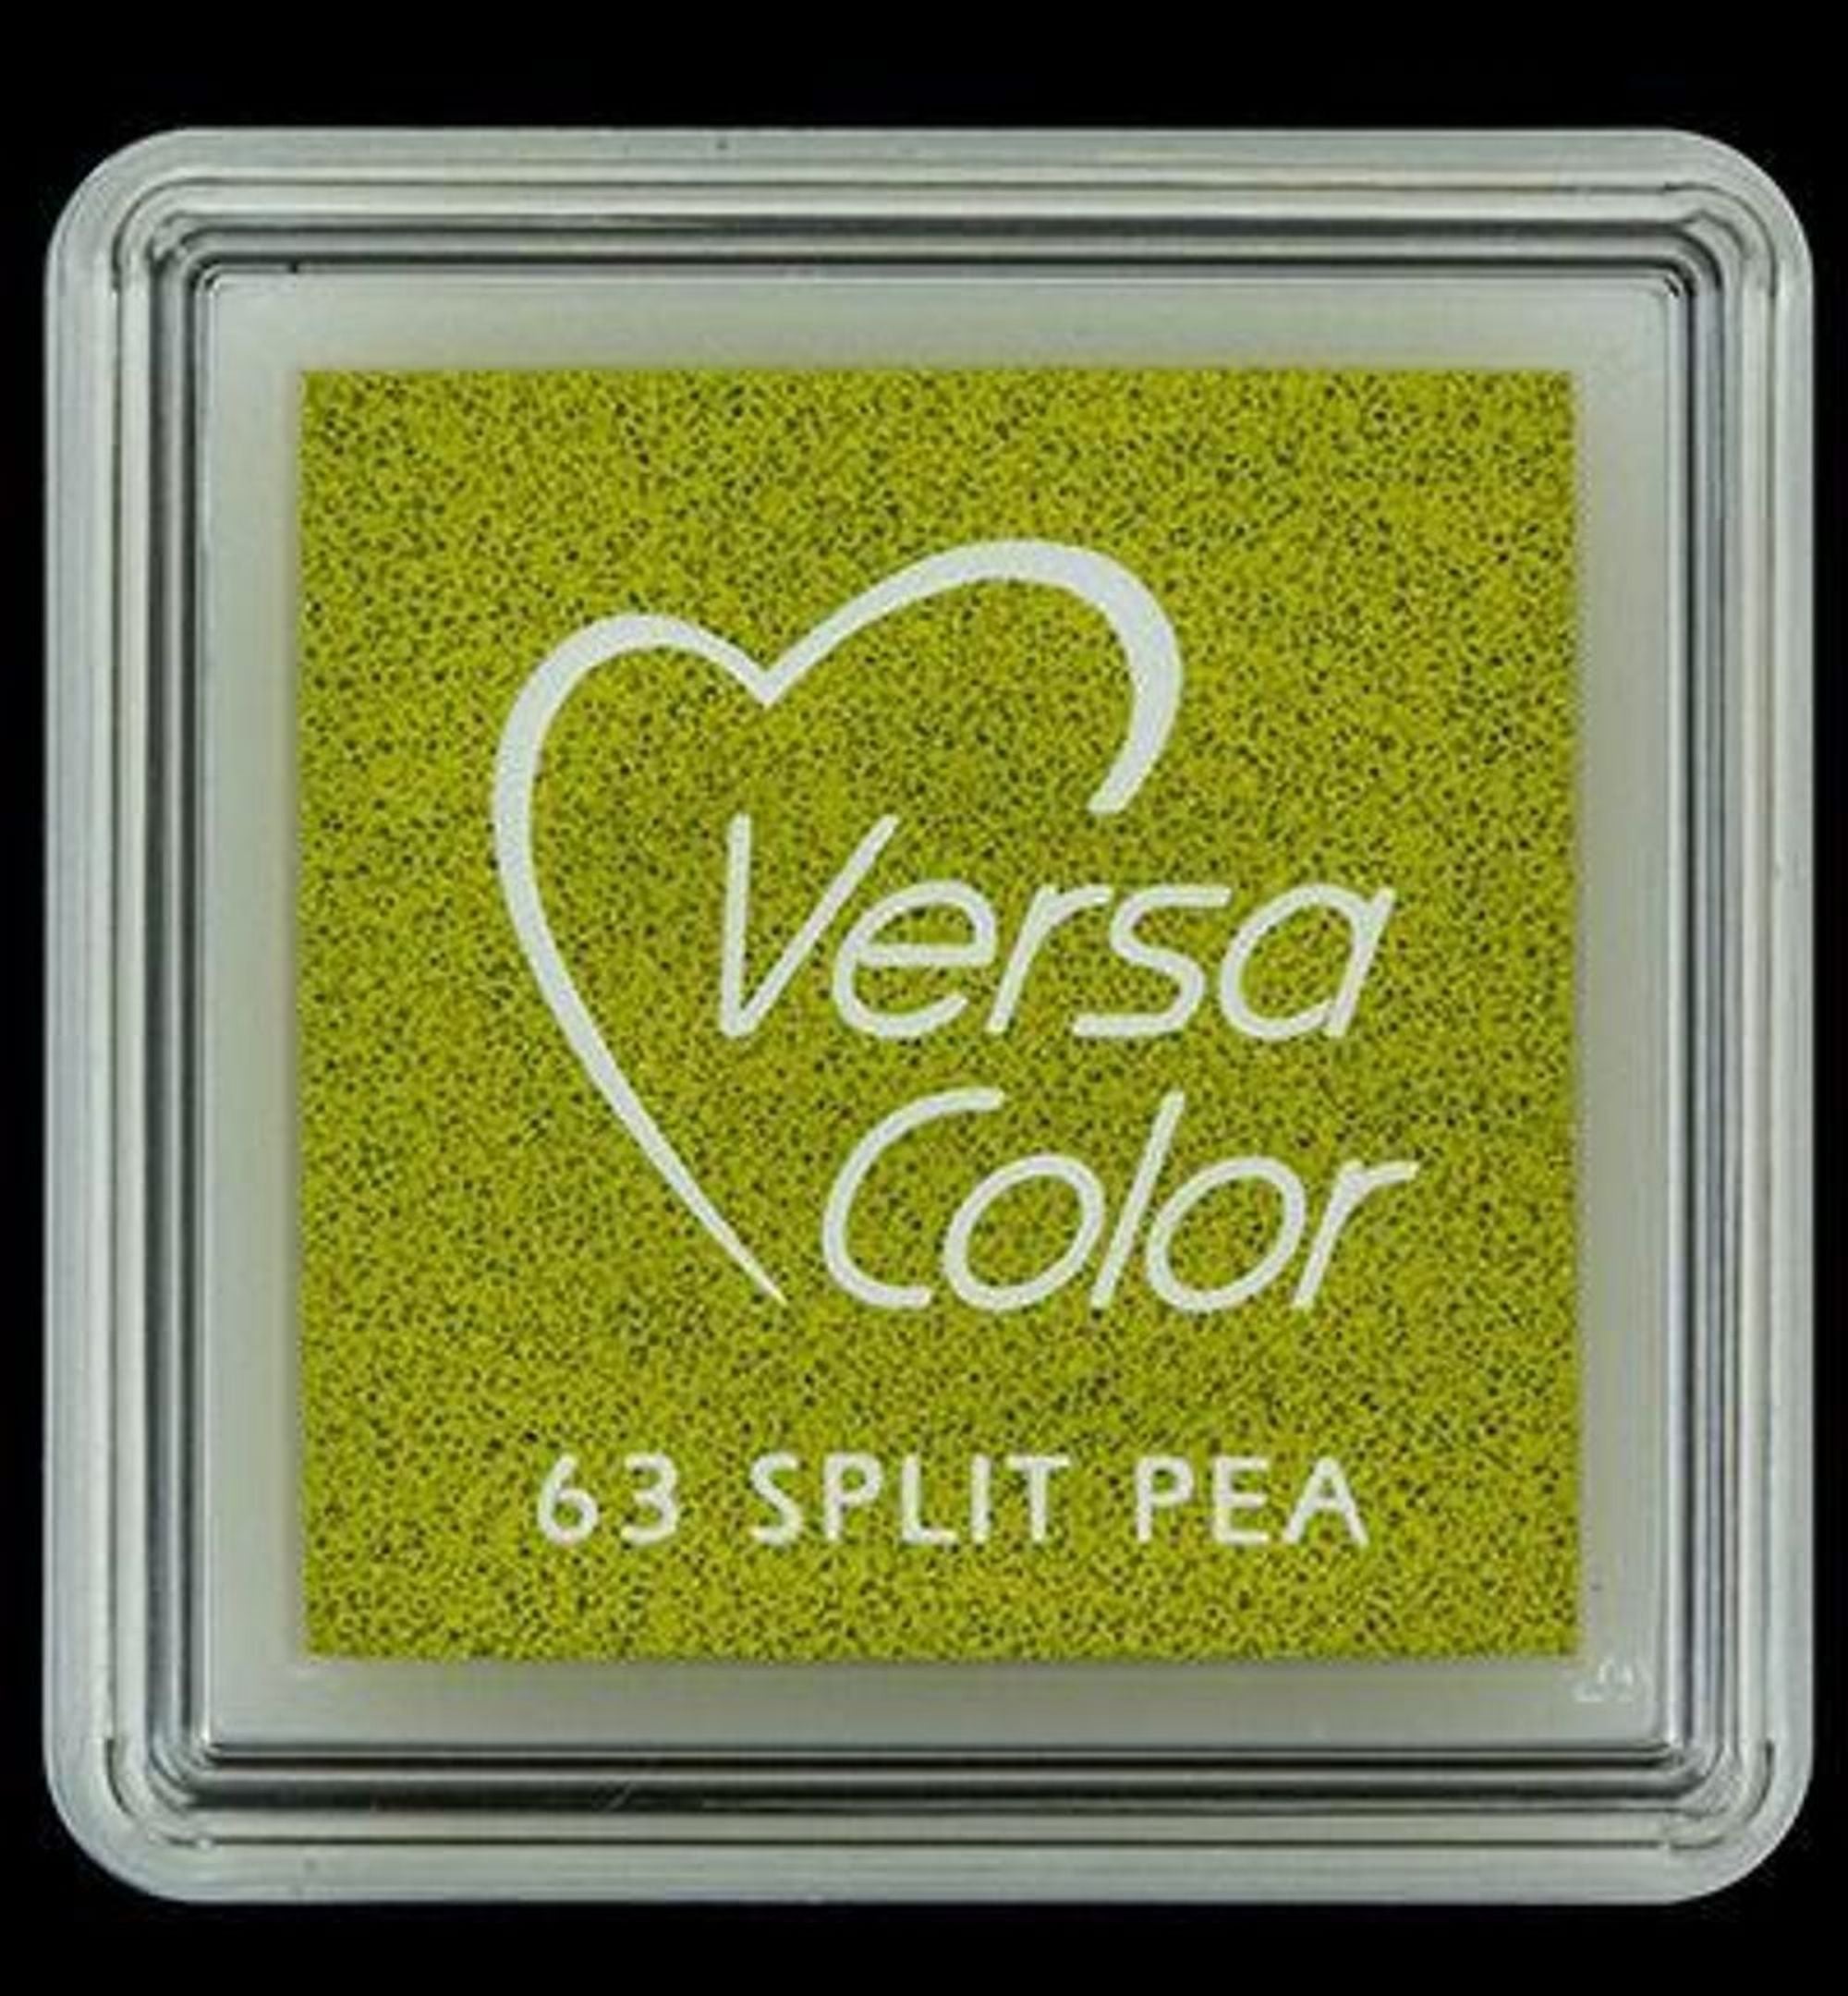 #colour_split pea